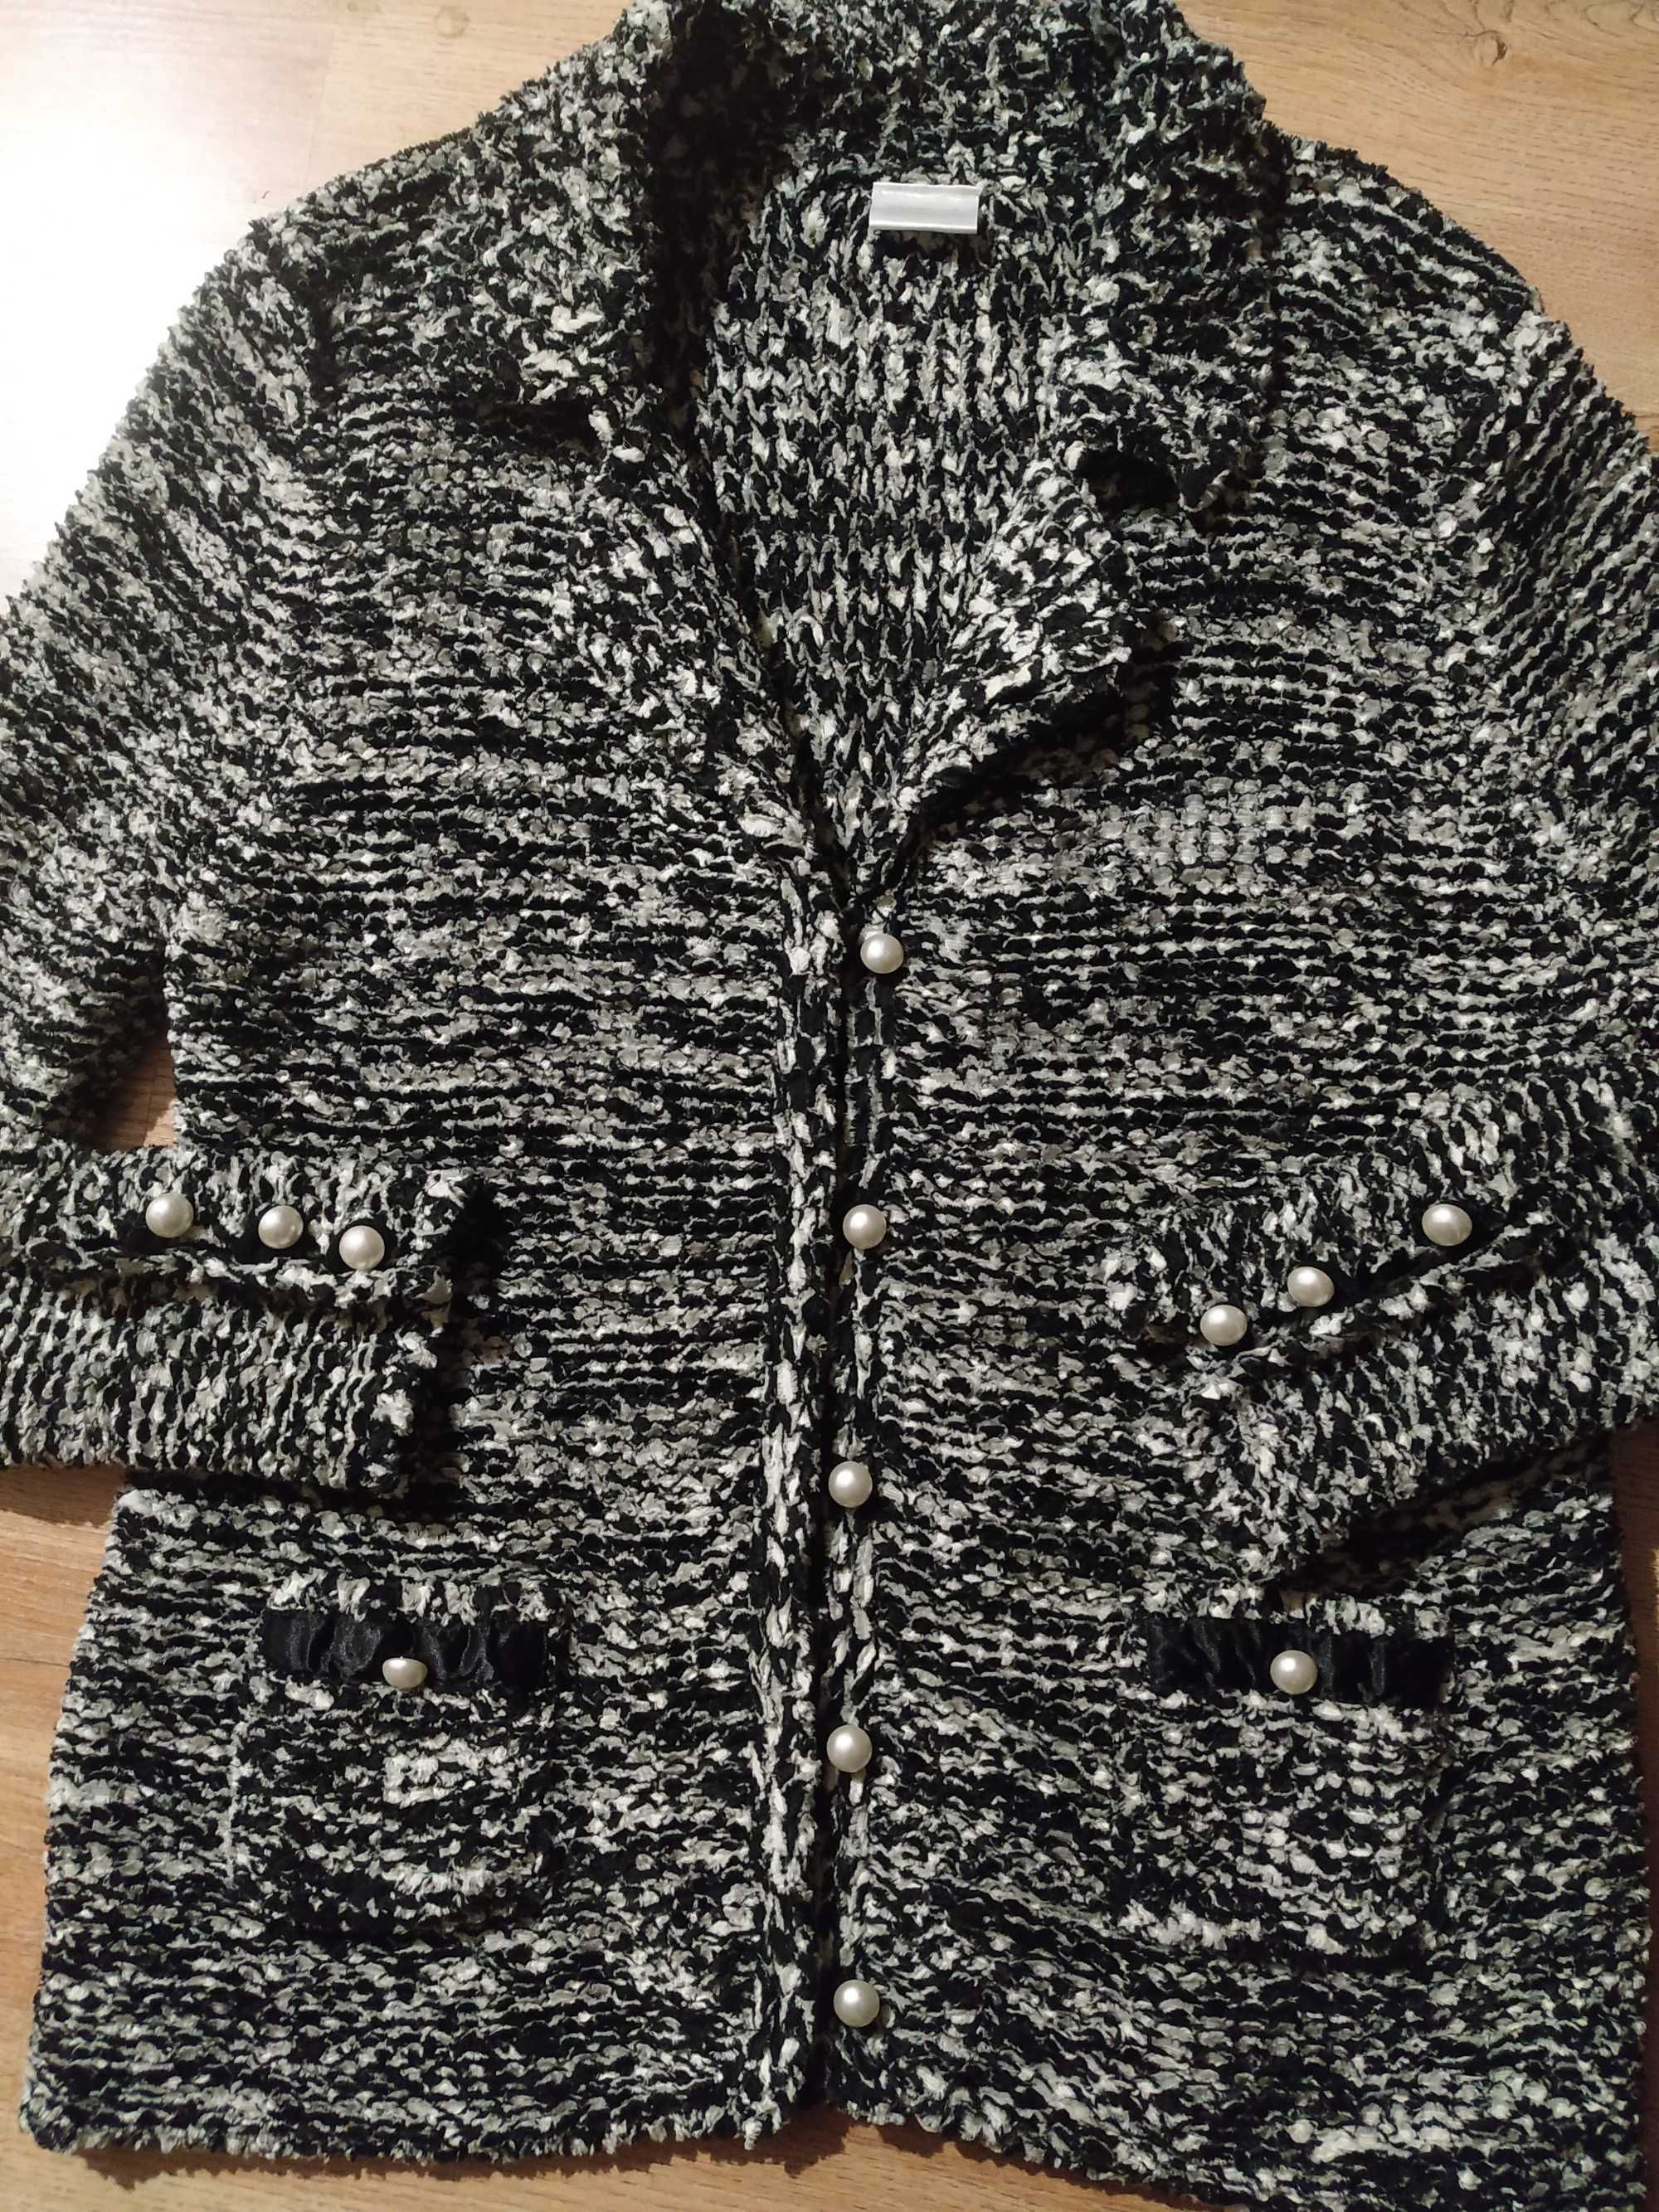 gruby sweter Clasics JD 44/46 żakiet